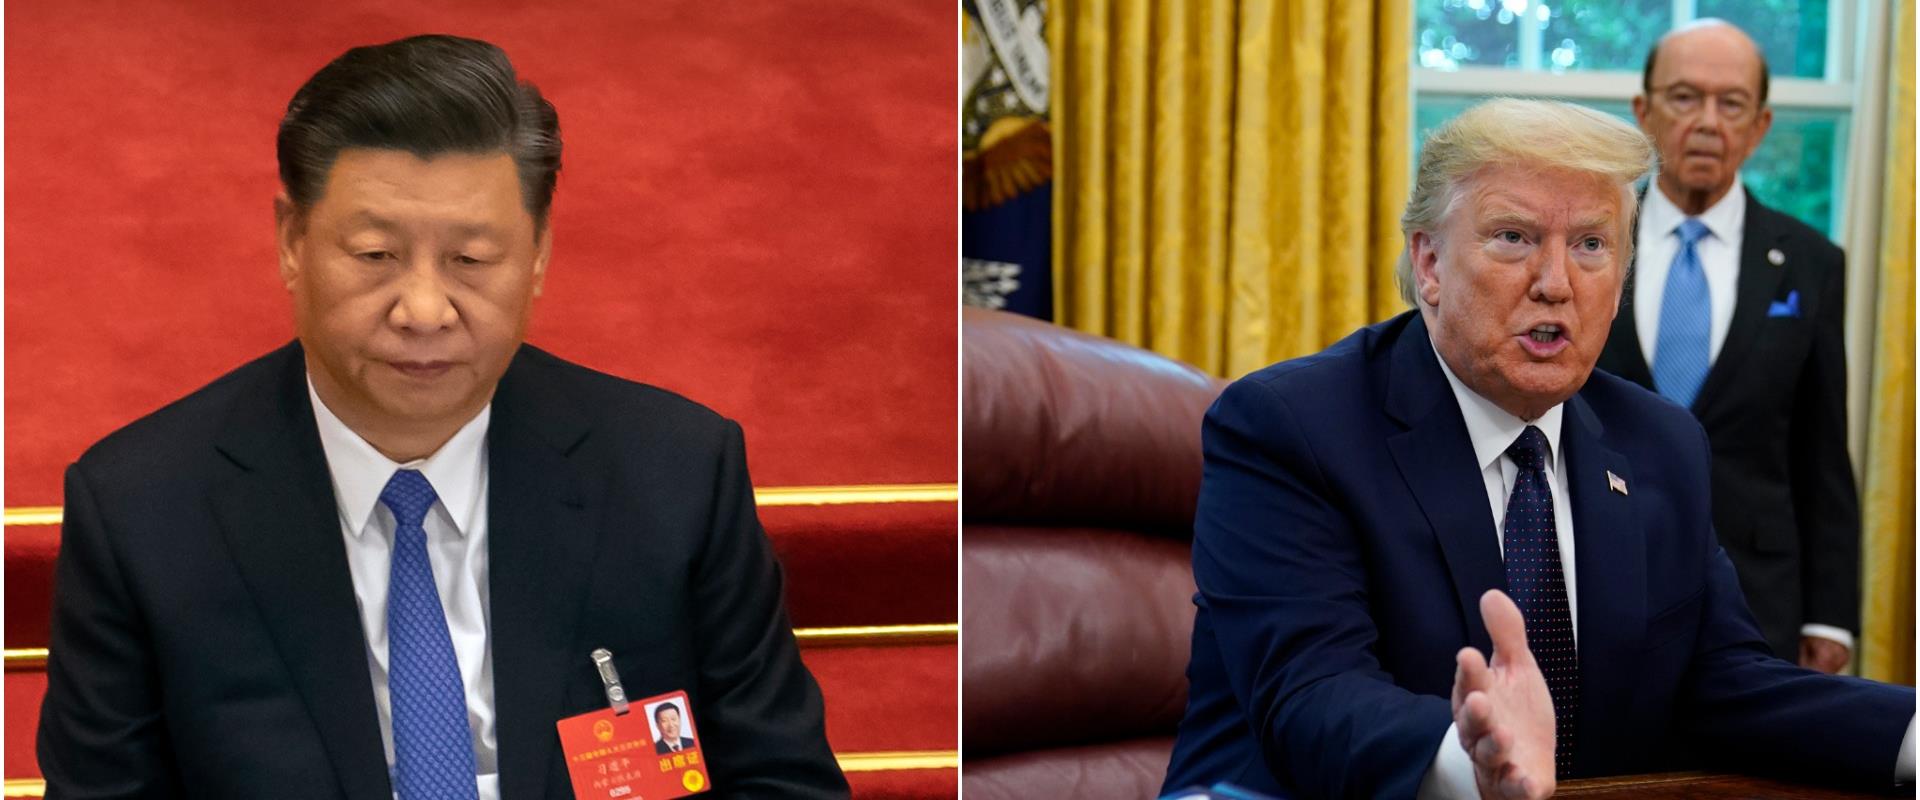 נשיאי ארה"ב וסין